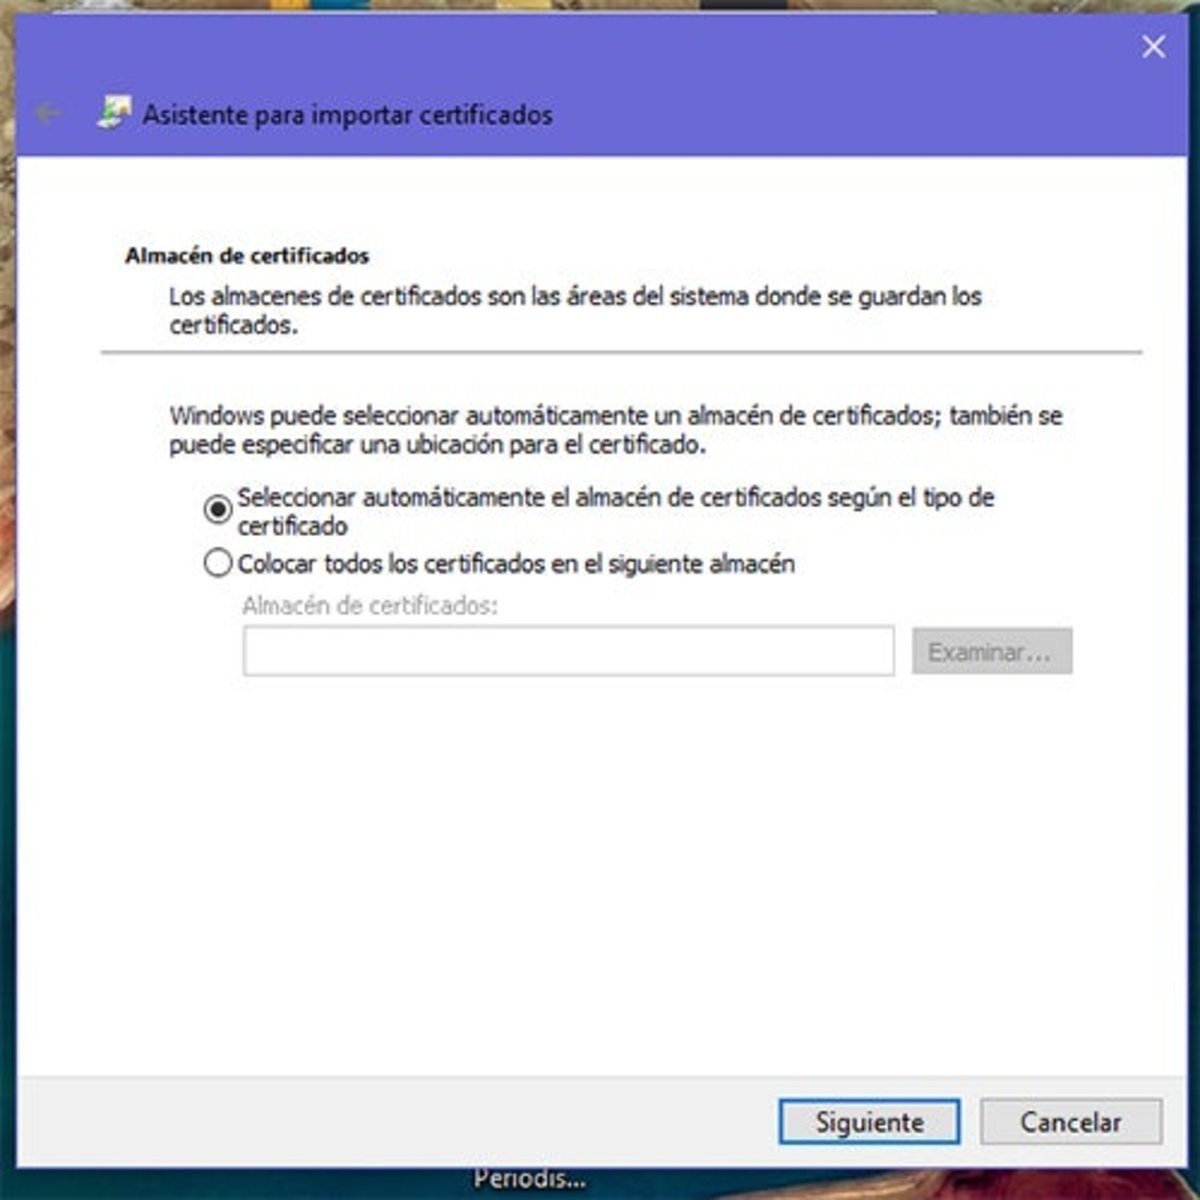 Almacén del certificado digital en Windows